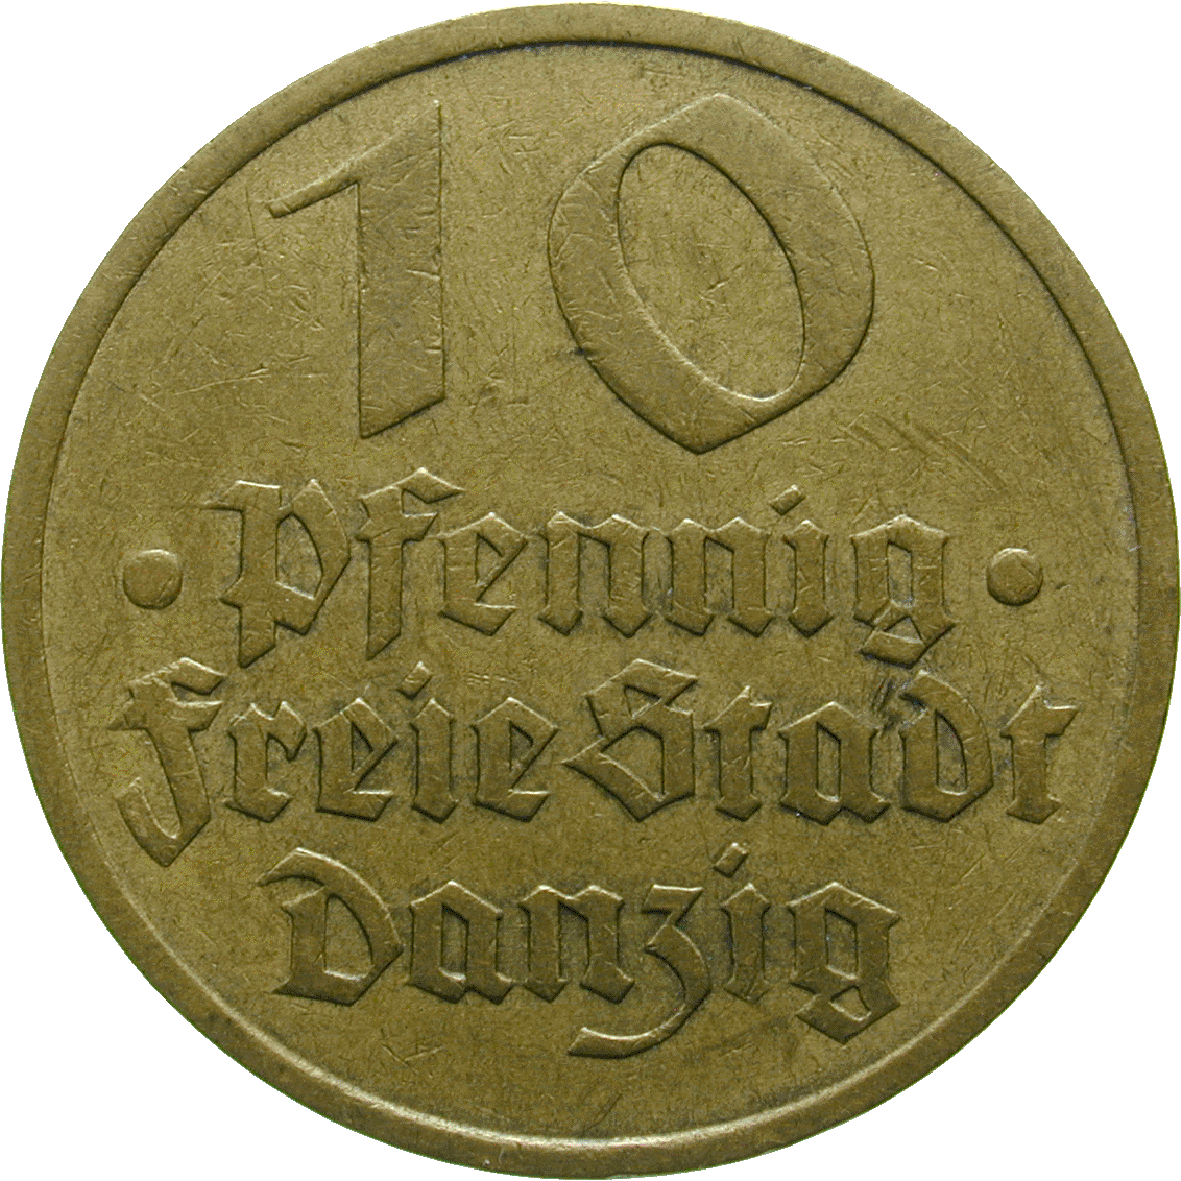 Weimar Republic, Free City of Danzig, 10 Pfennigs 1932 (obverse)